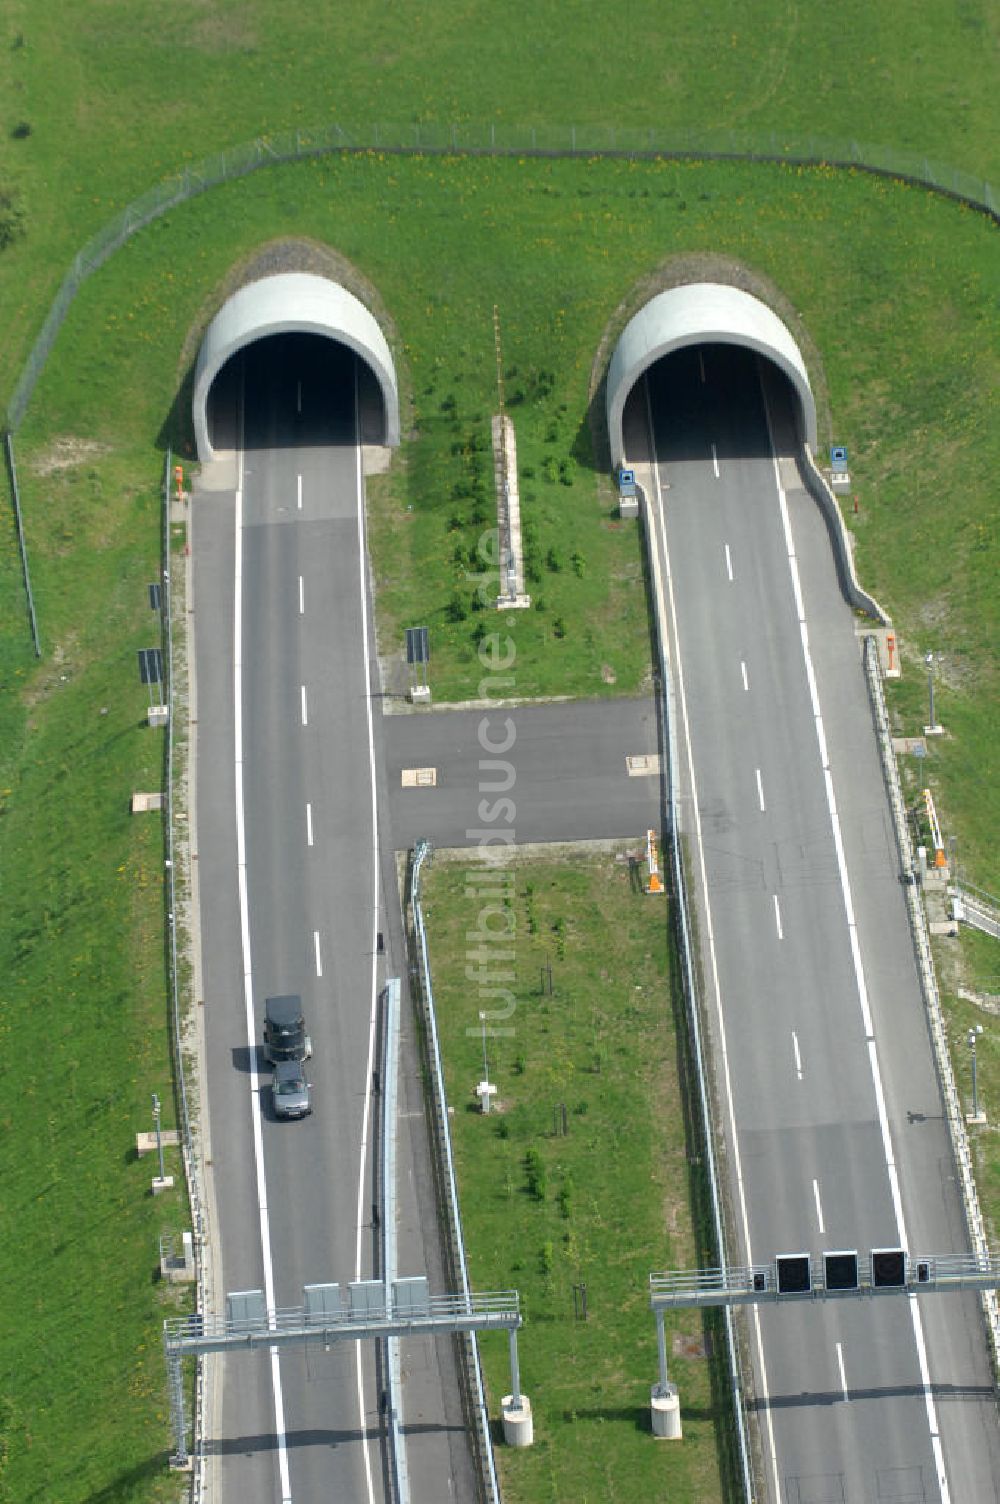 Luftaufnahme Hessisch Lichtenau - Neubau der Autobahn A44 nördlich von Hessisch Lichtenau